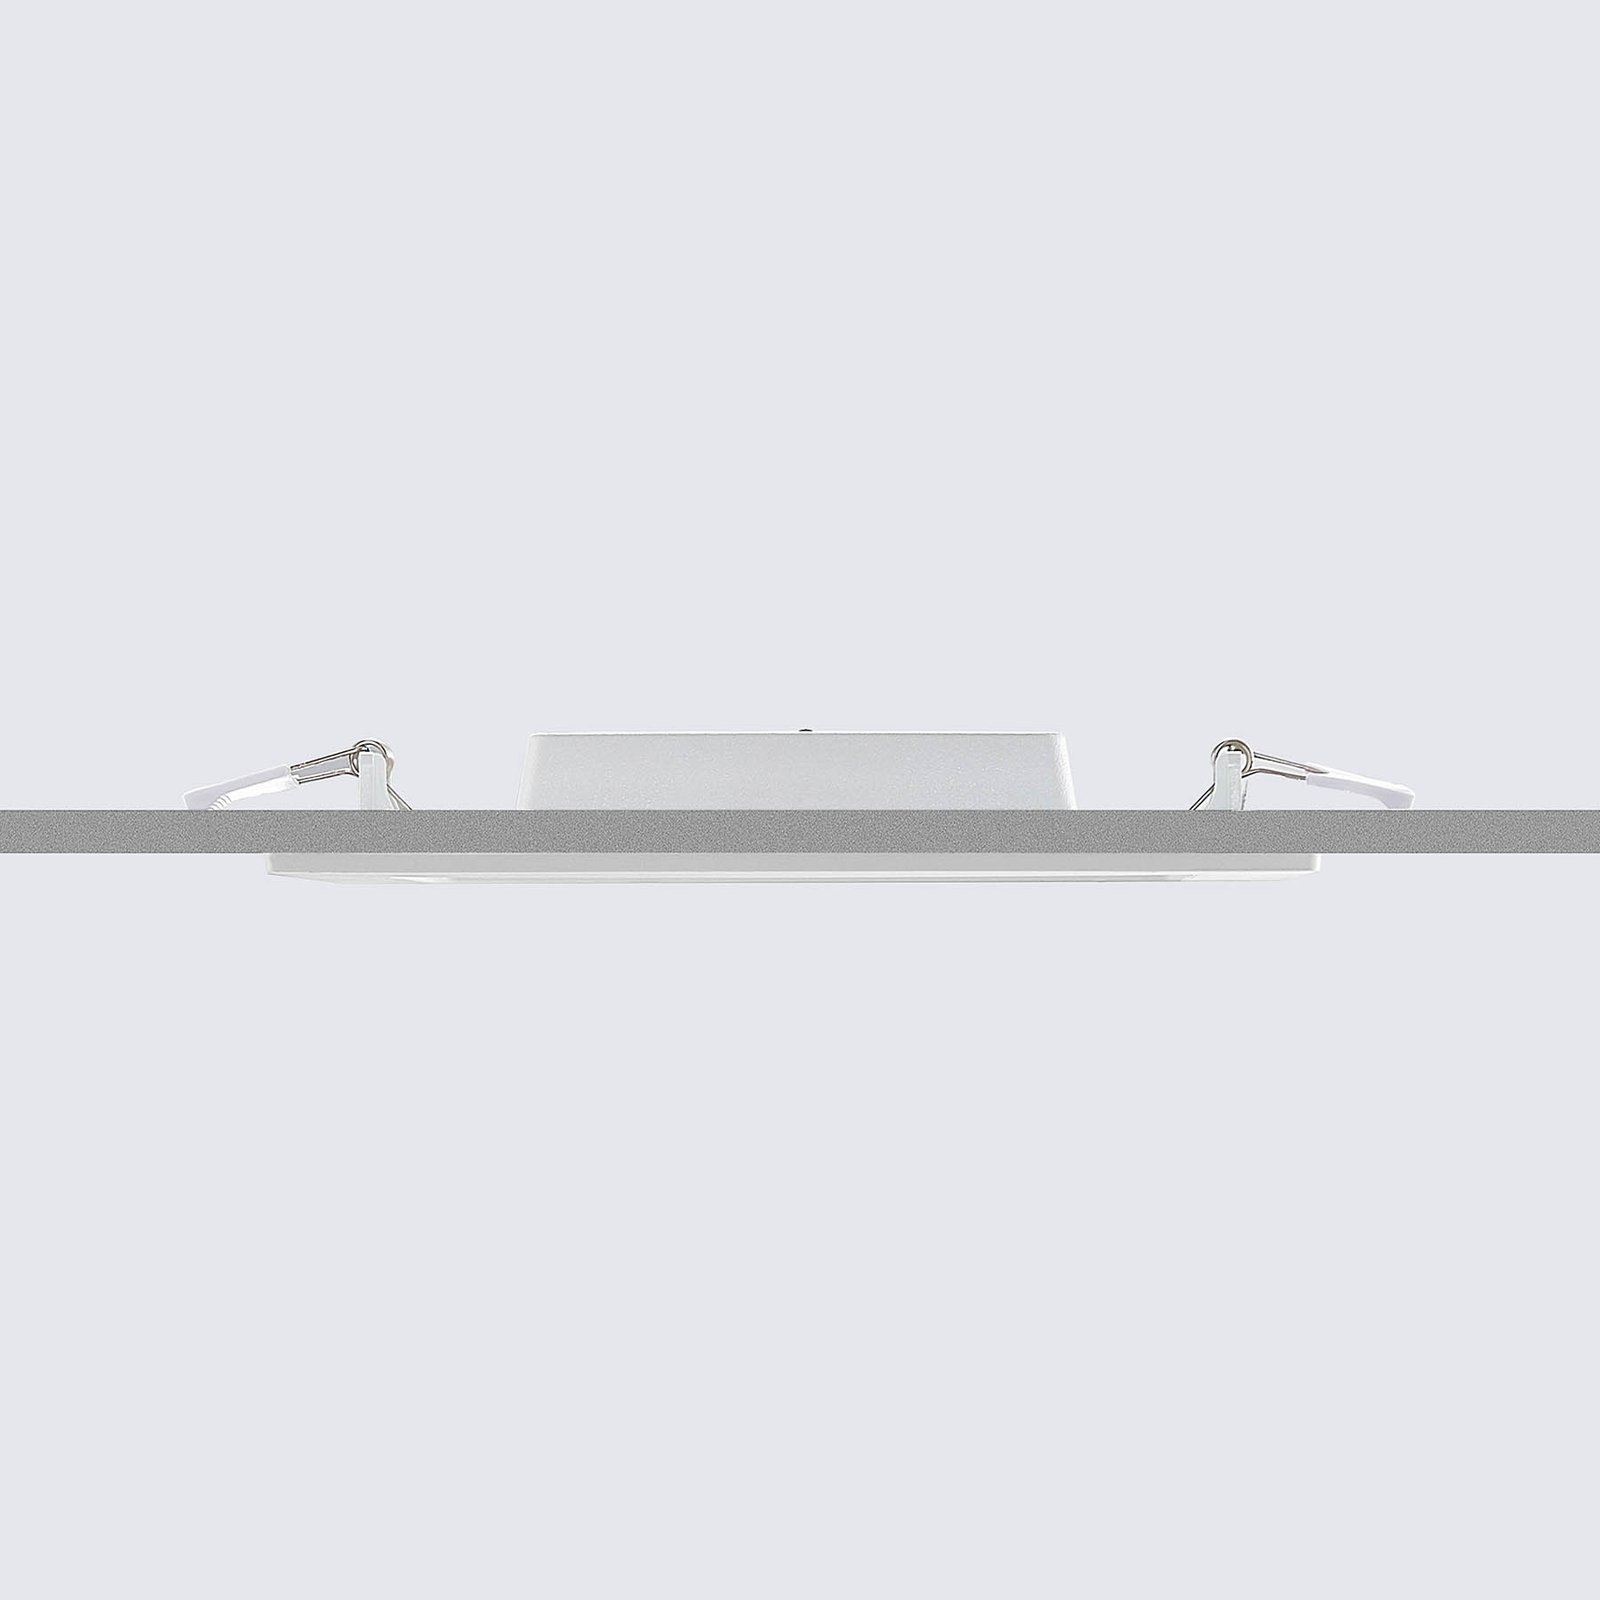 Prios LED-Einbaulampe Helina, weiß, 22 cm, 18 W, dimmbar